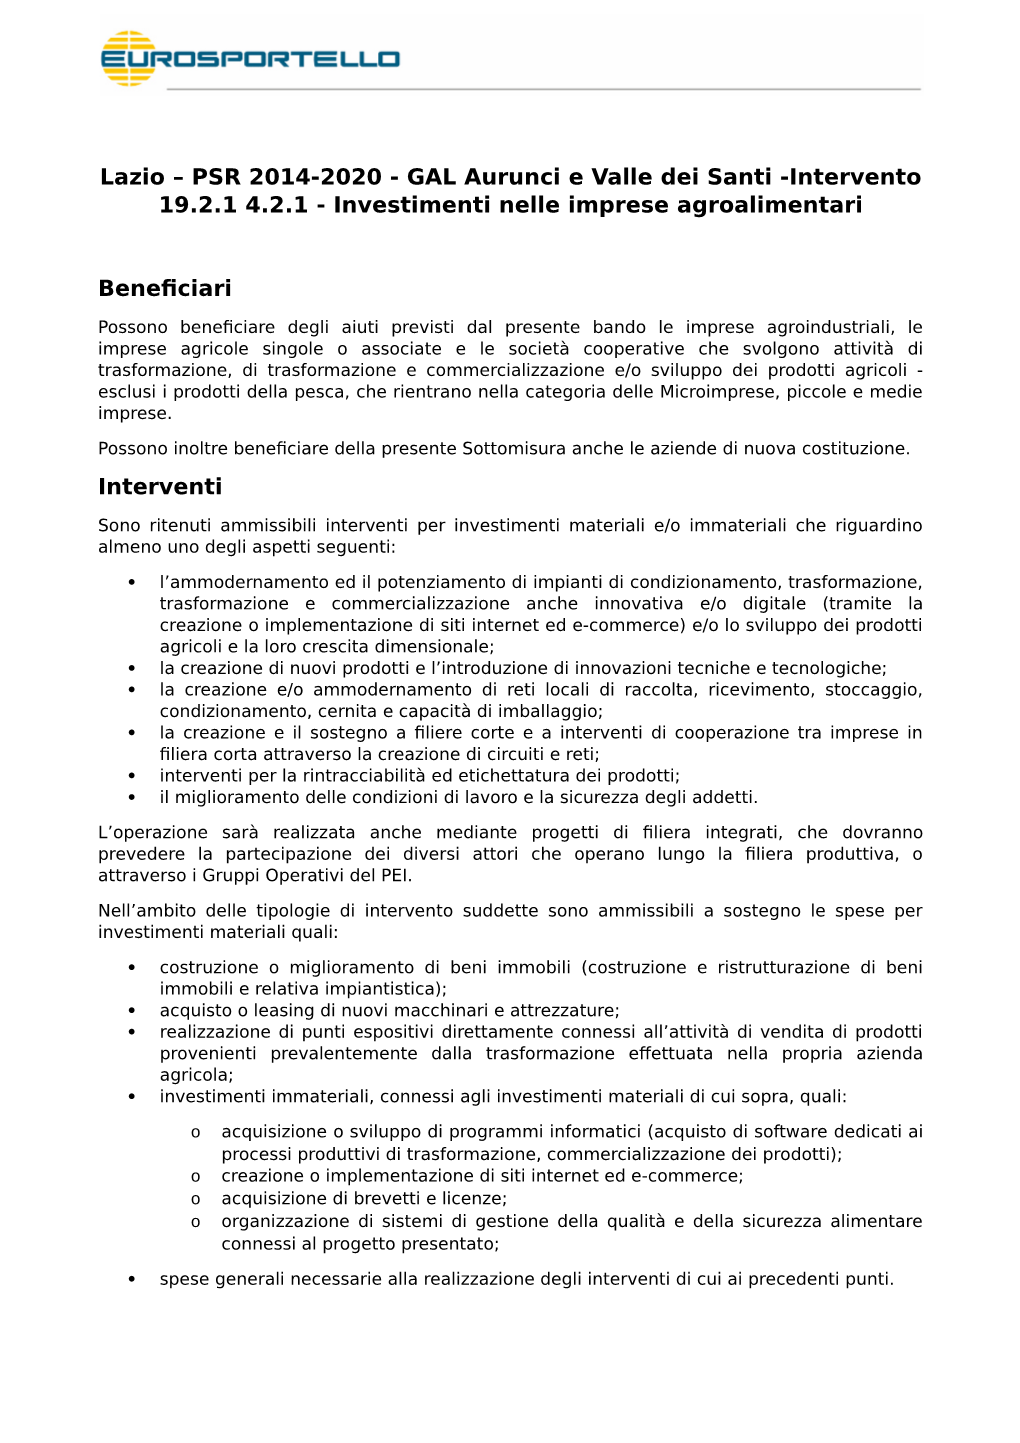 Lazio – PSR 2014-2020 - GAL Aurunci E Valle Dei Santi -Intervento 19.2.1 4.2.1 - Investimenti Nelle Imprese Agroalimentari